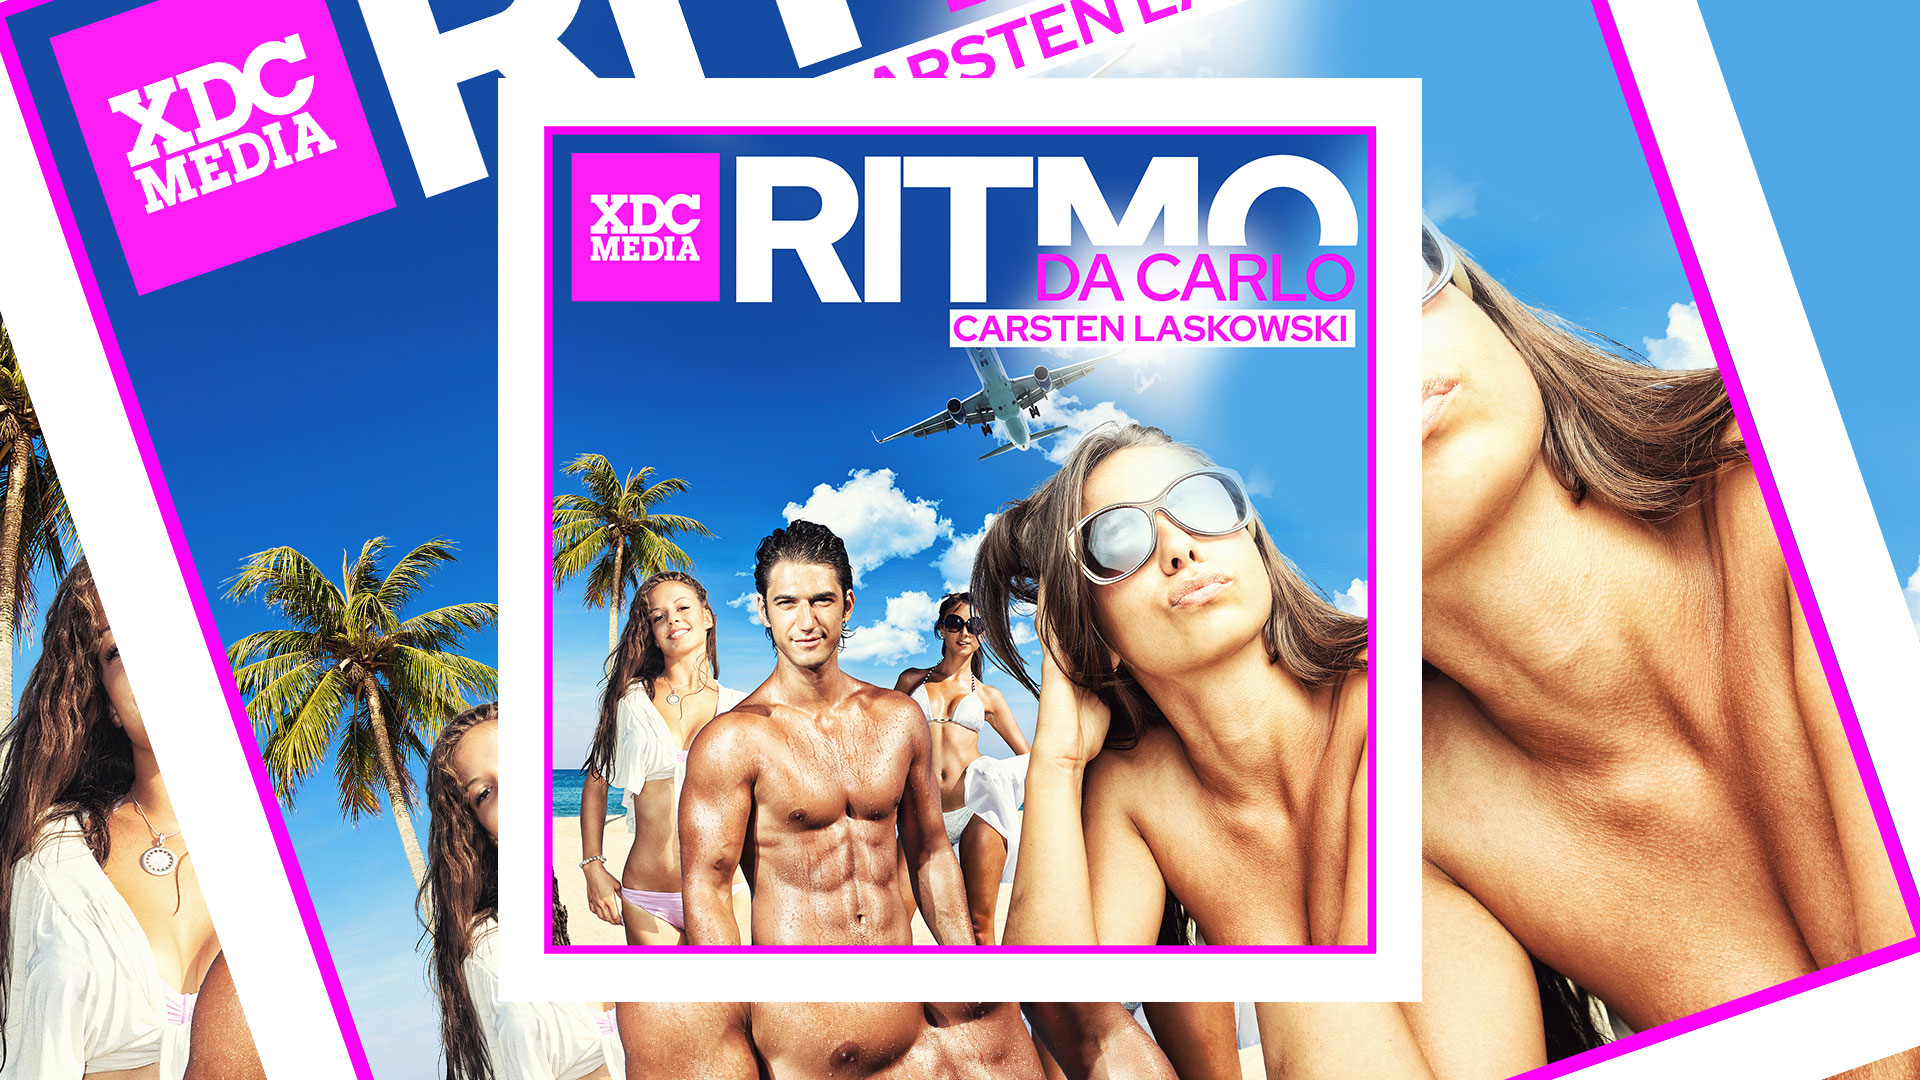 RITMO_DA_CARLO_CARSTEN-LASKOWSKI_XDCMEDIA-MUSIC.jpg